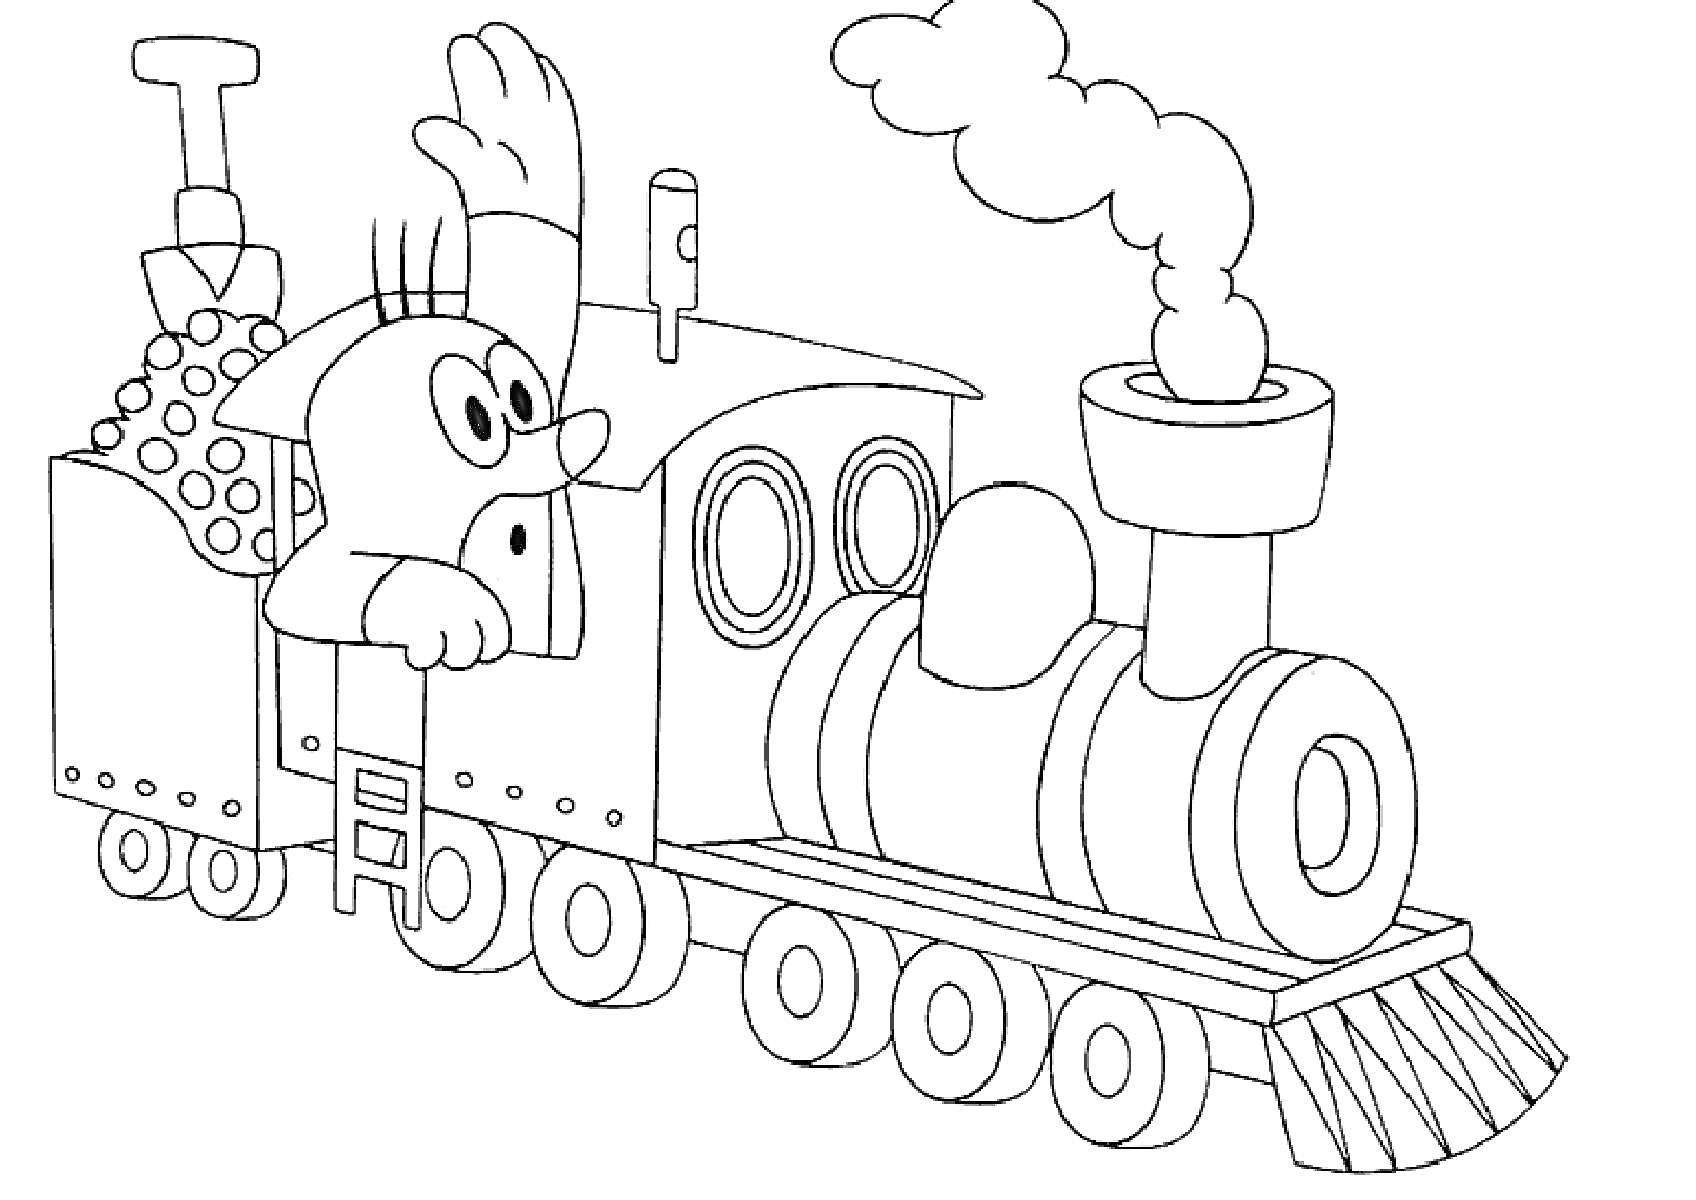 Крот на поезде (Крот машет, сидя в поезде с углем)